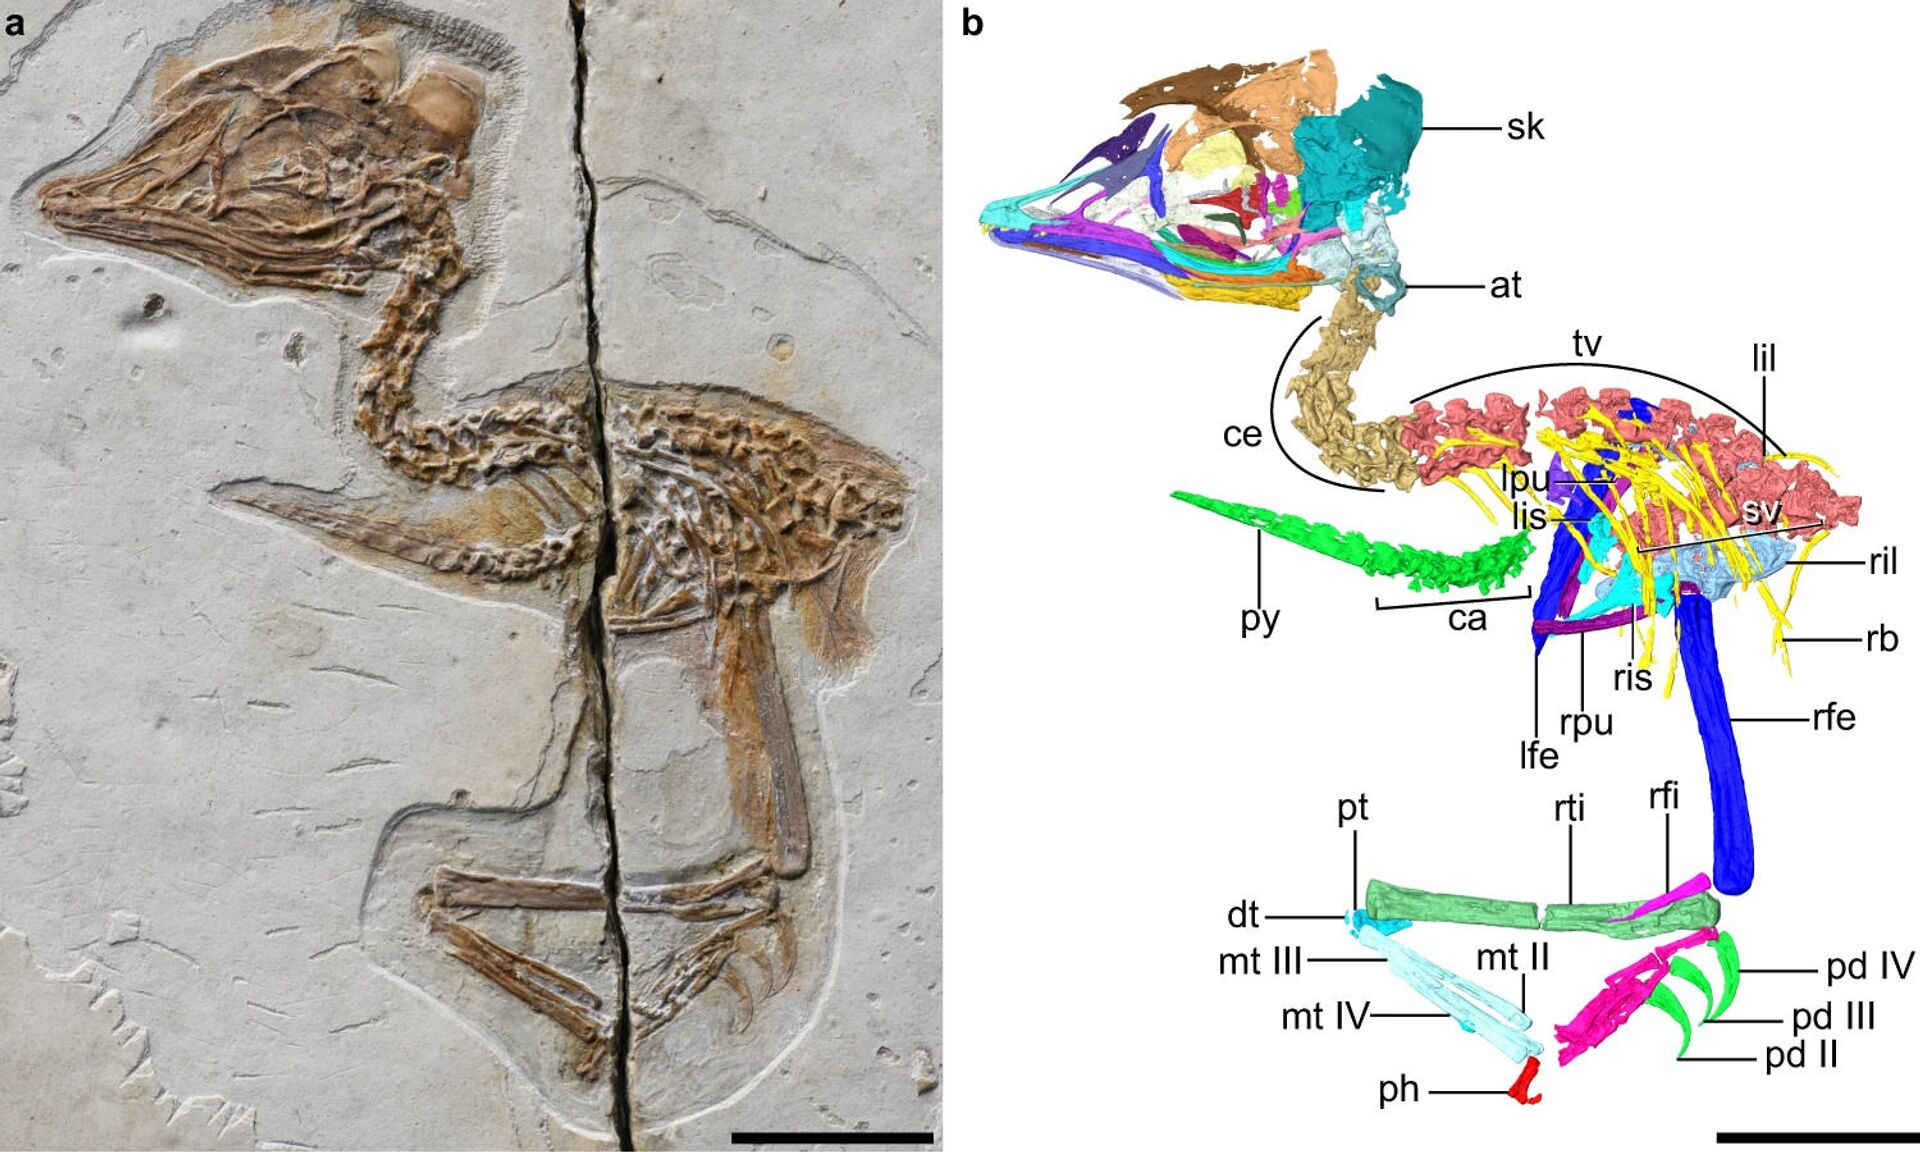 Fósseis encontrados na China revelam mescla entre dinossauros e aves (FOTO) - Sputnik Brasil, 1920, 24.06.2021